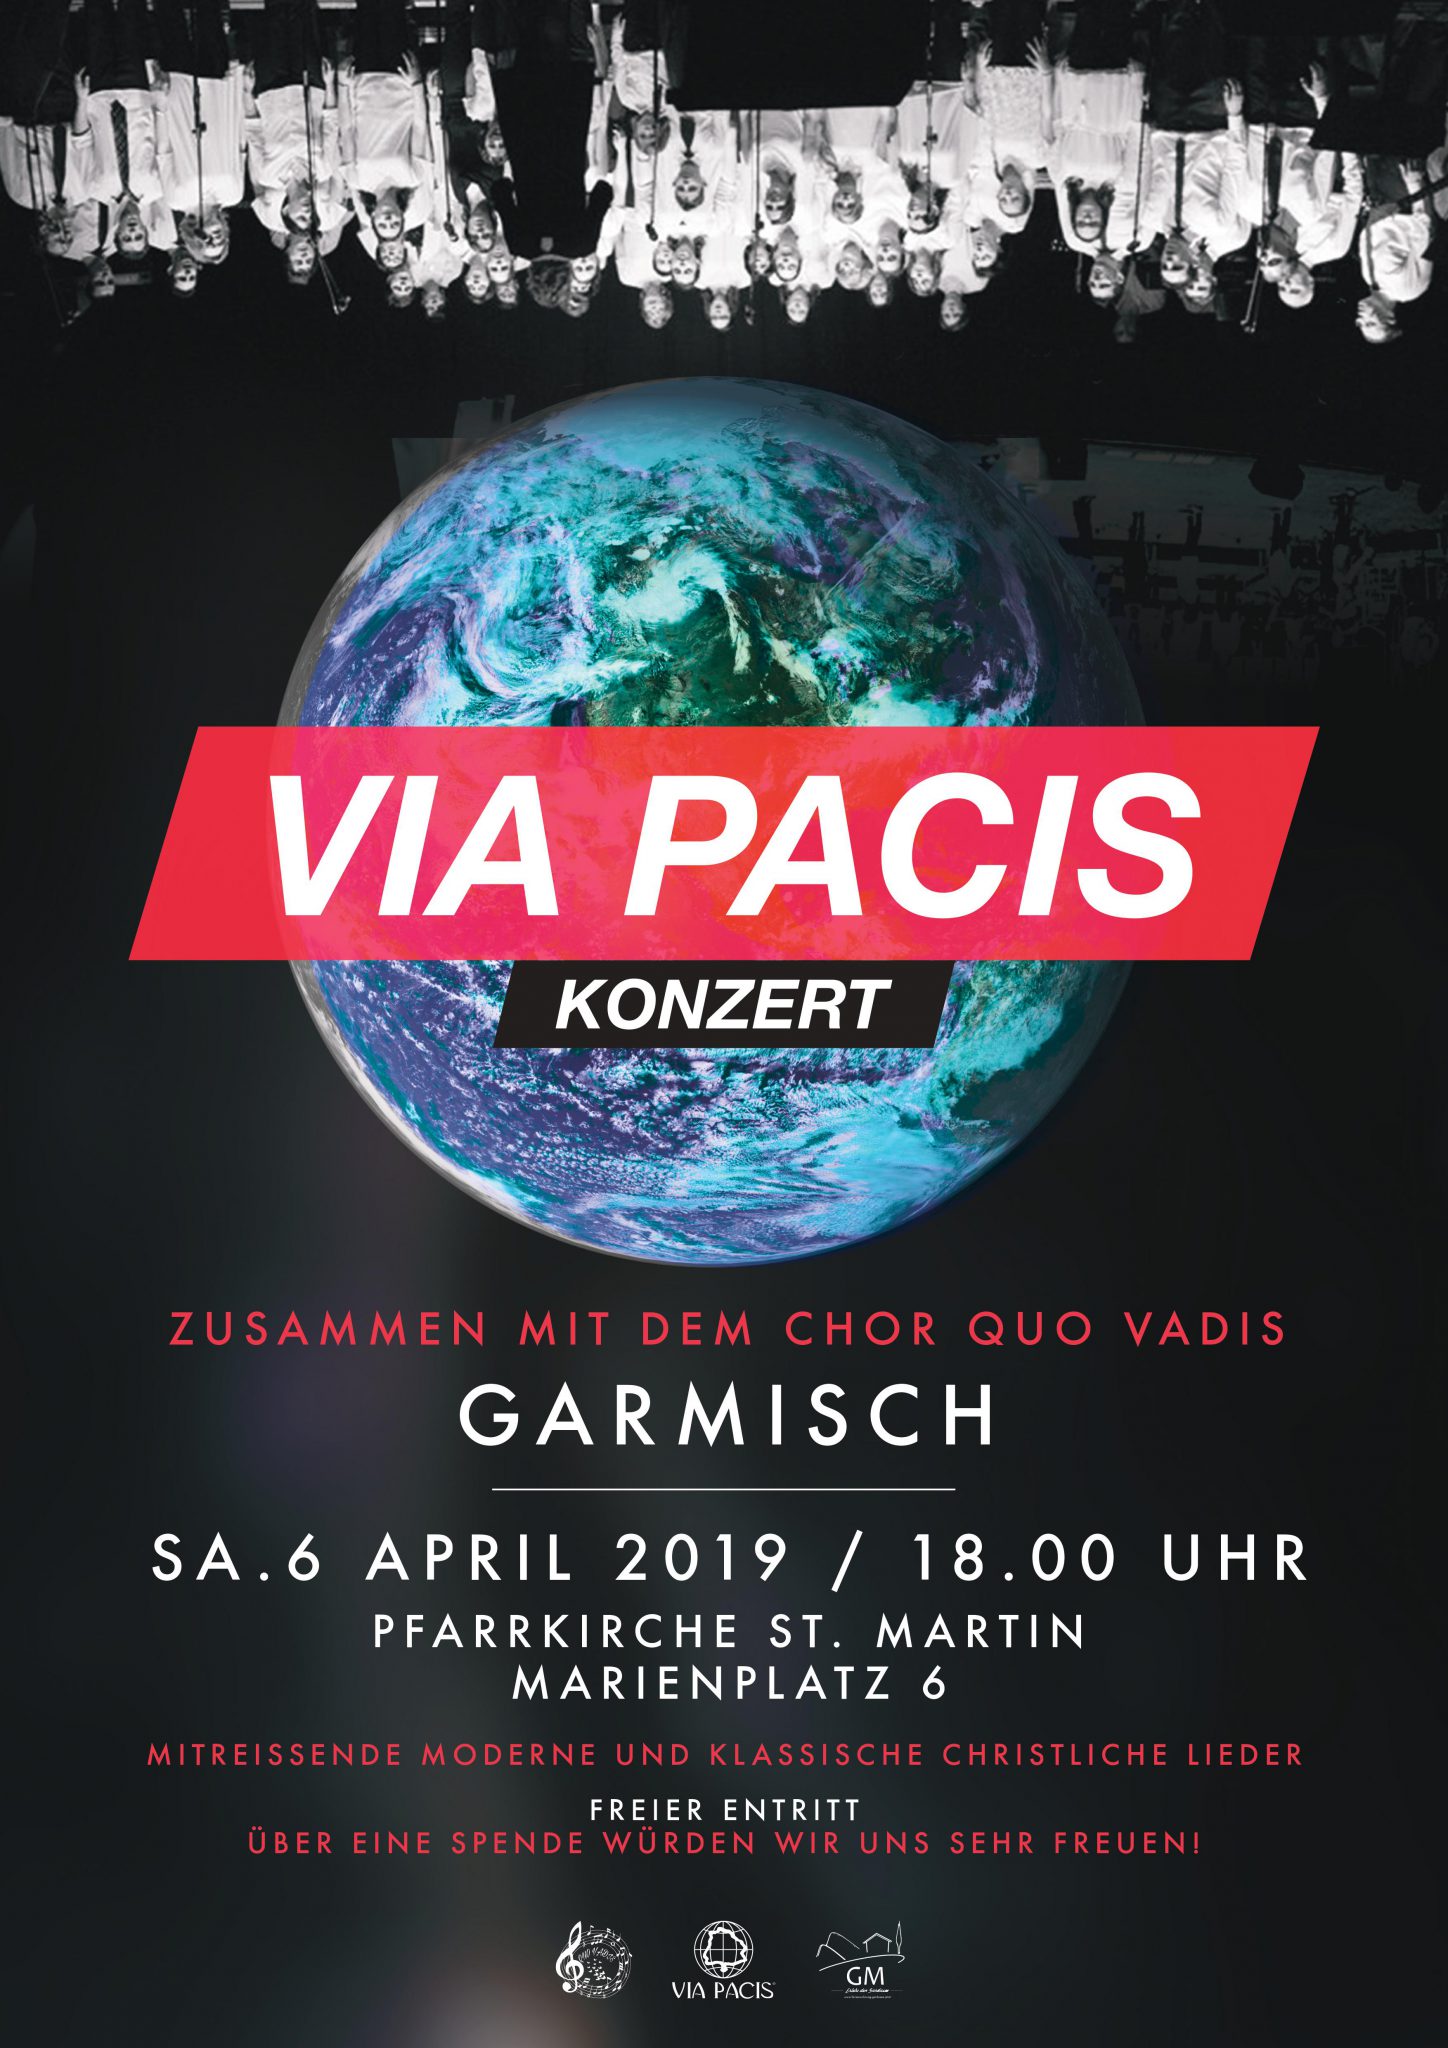 Bild Plakat Konzert Chor Quo Vadis und Chorgemeinschaft Via Pacis am 06.04.2019 um 18 Uhr, Pfarrkirche St. Martin Garmisch